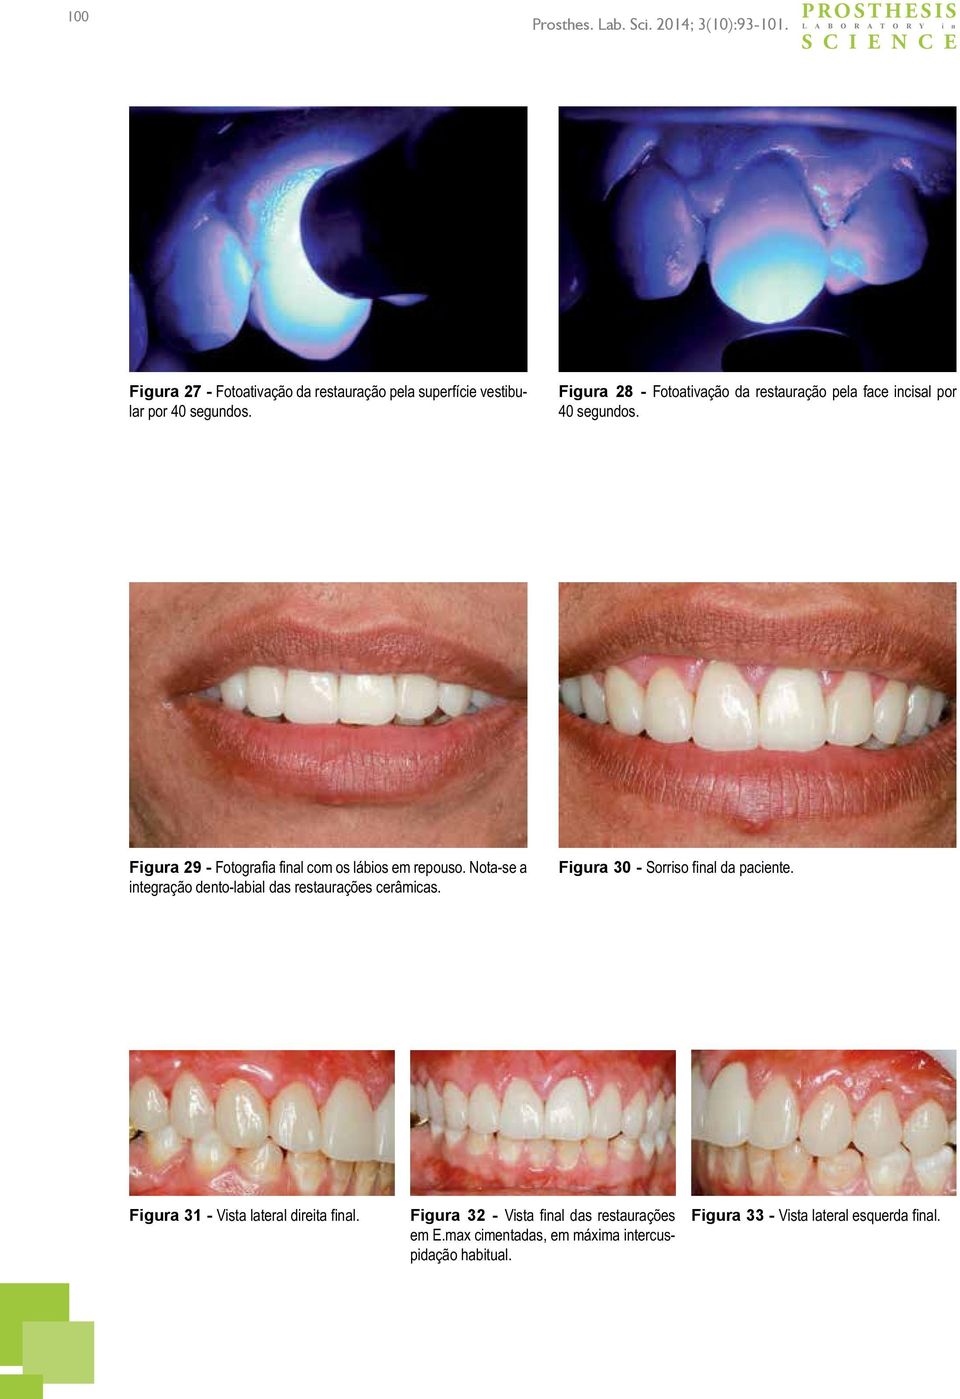 Figura 29 - Fotografia final com os lábios em repouso. Nota-se a integração dento-labial das restaurações cerâmicas.